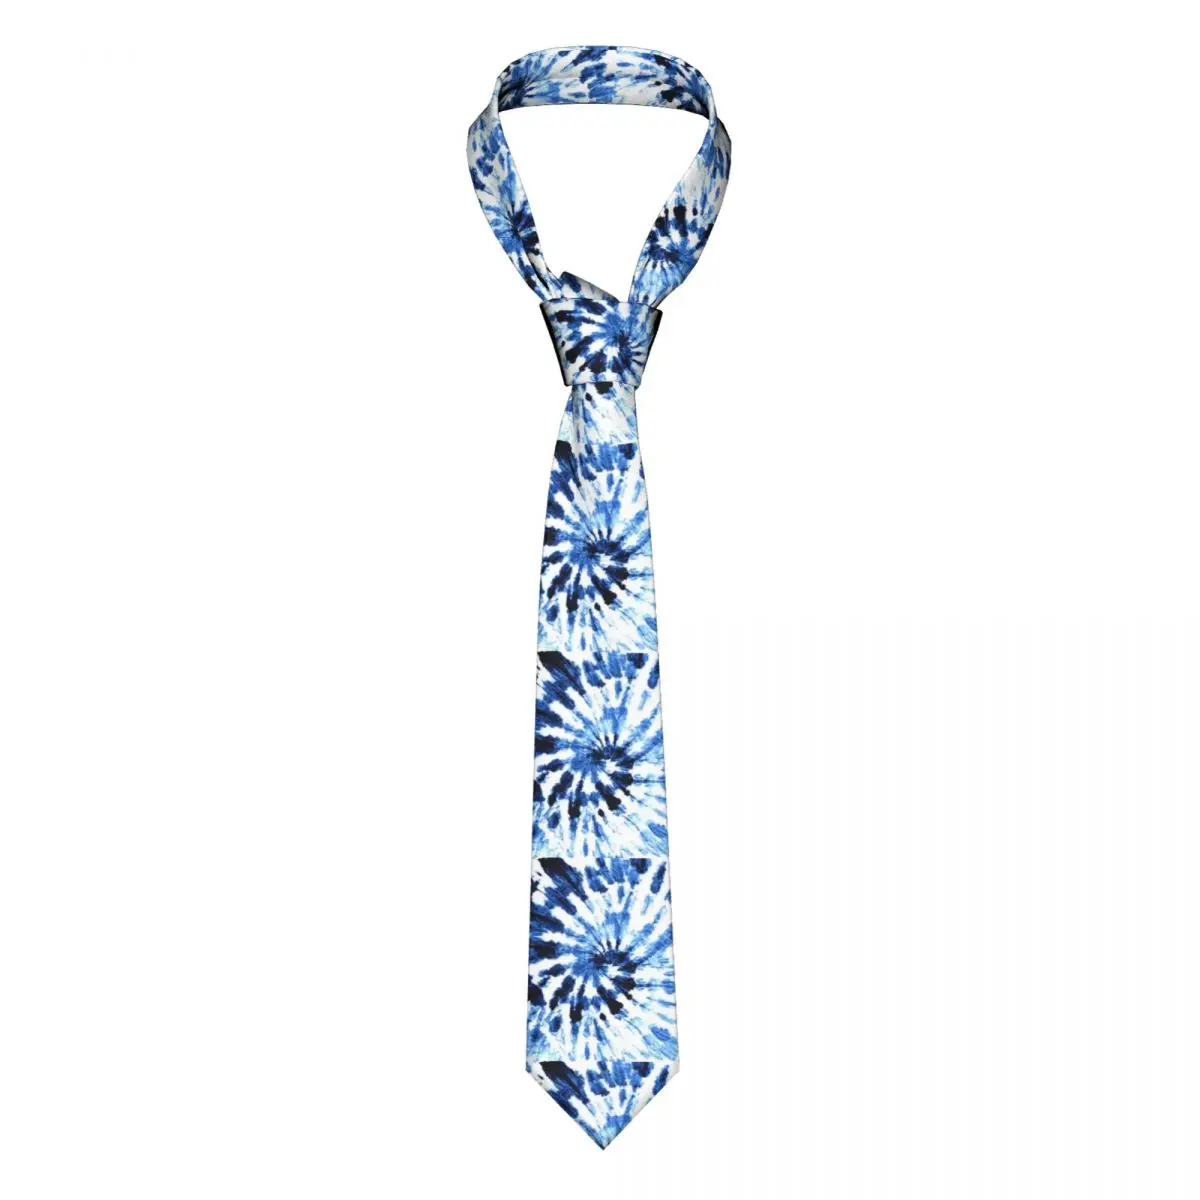 

Синий галстук-бабочка красящий галстук абстрактный принт полиэстер шелк Узор Галстук на шею подарок на свадьбу для мужчин галстук-бабочка